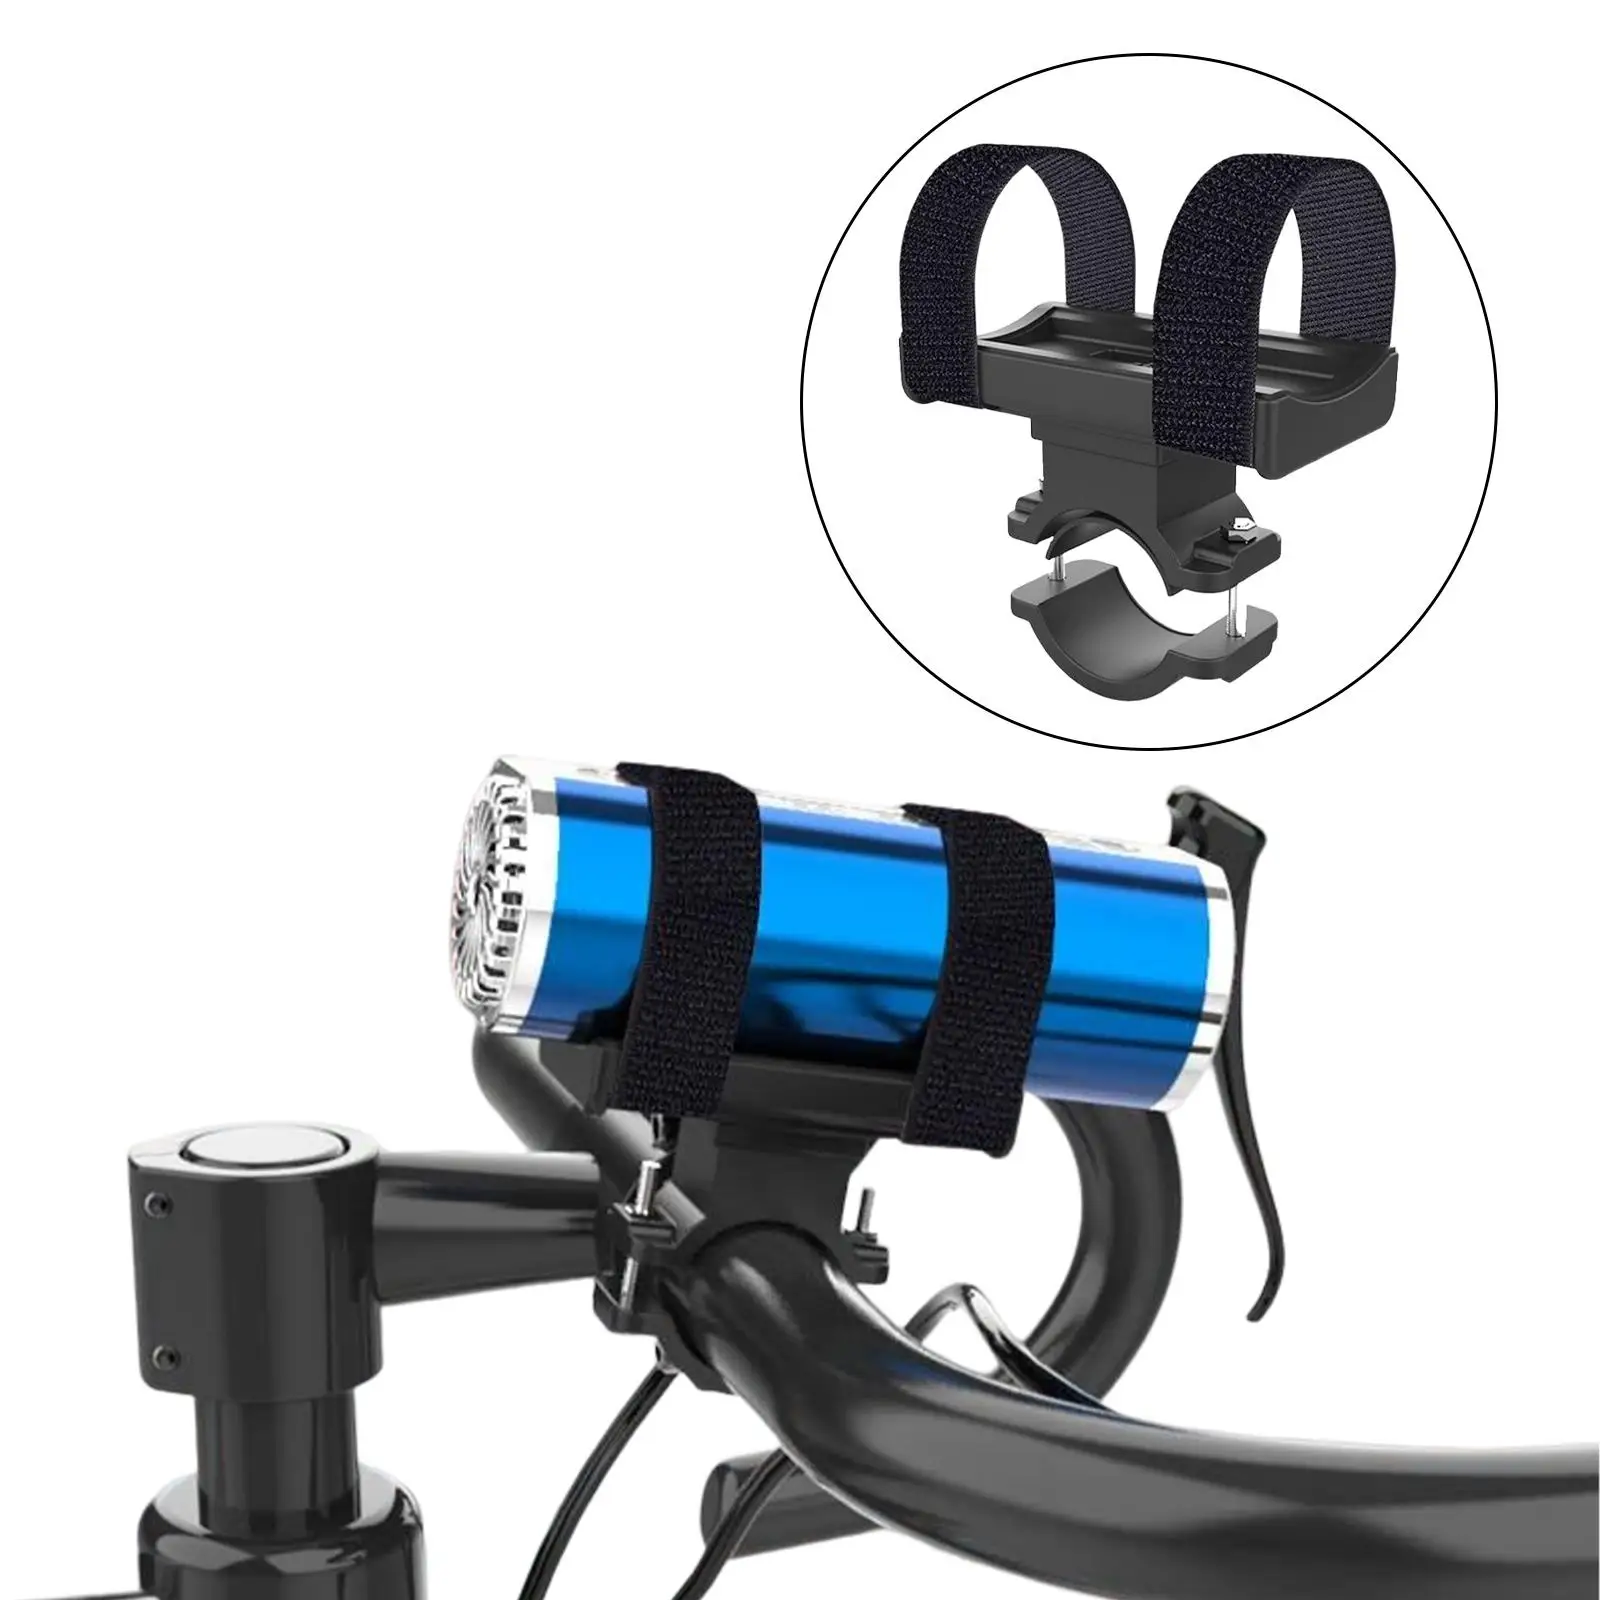  Headlight Speaker Holder Adjustable Belts Bike Flashlight Mount for Mountain Bike